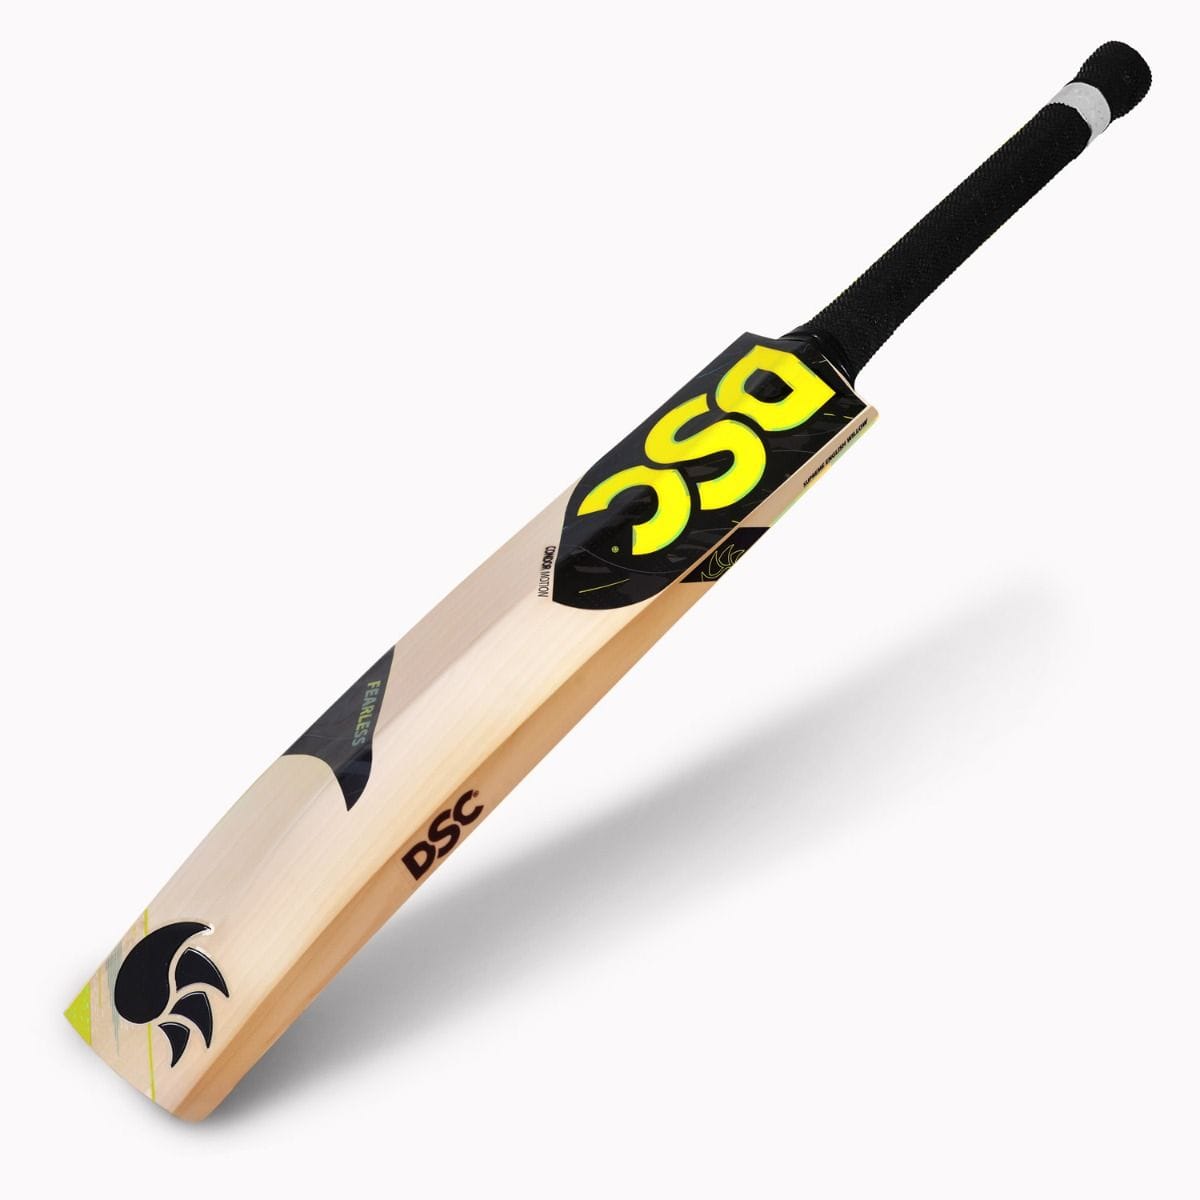 WSC Cricket Bats DSC Condor Motion  Adult Cricket Bat SH